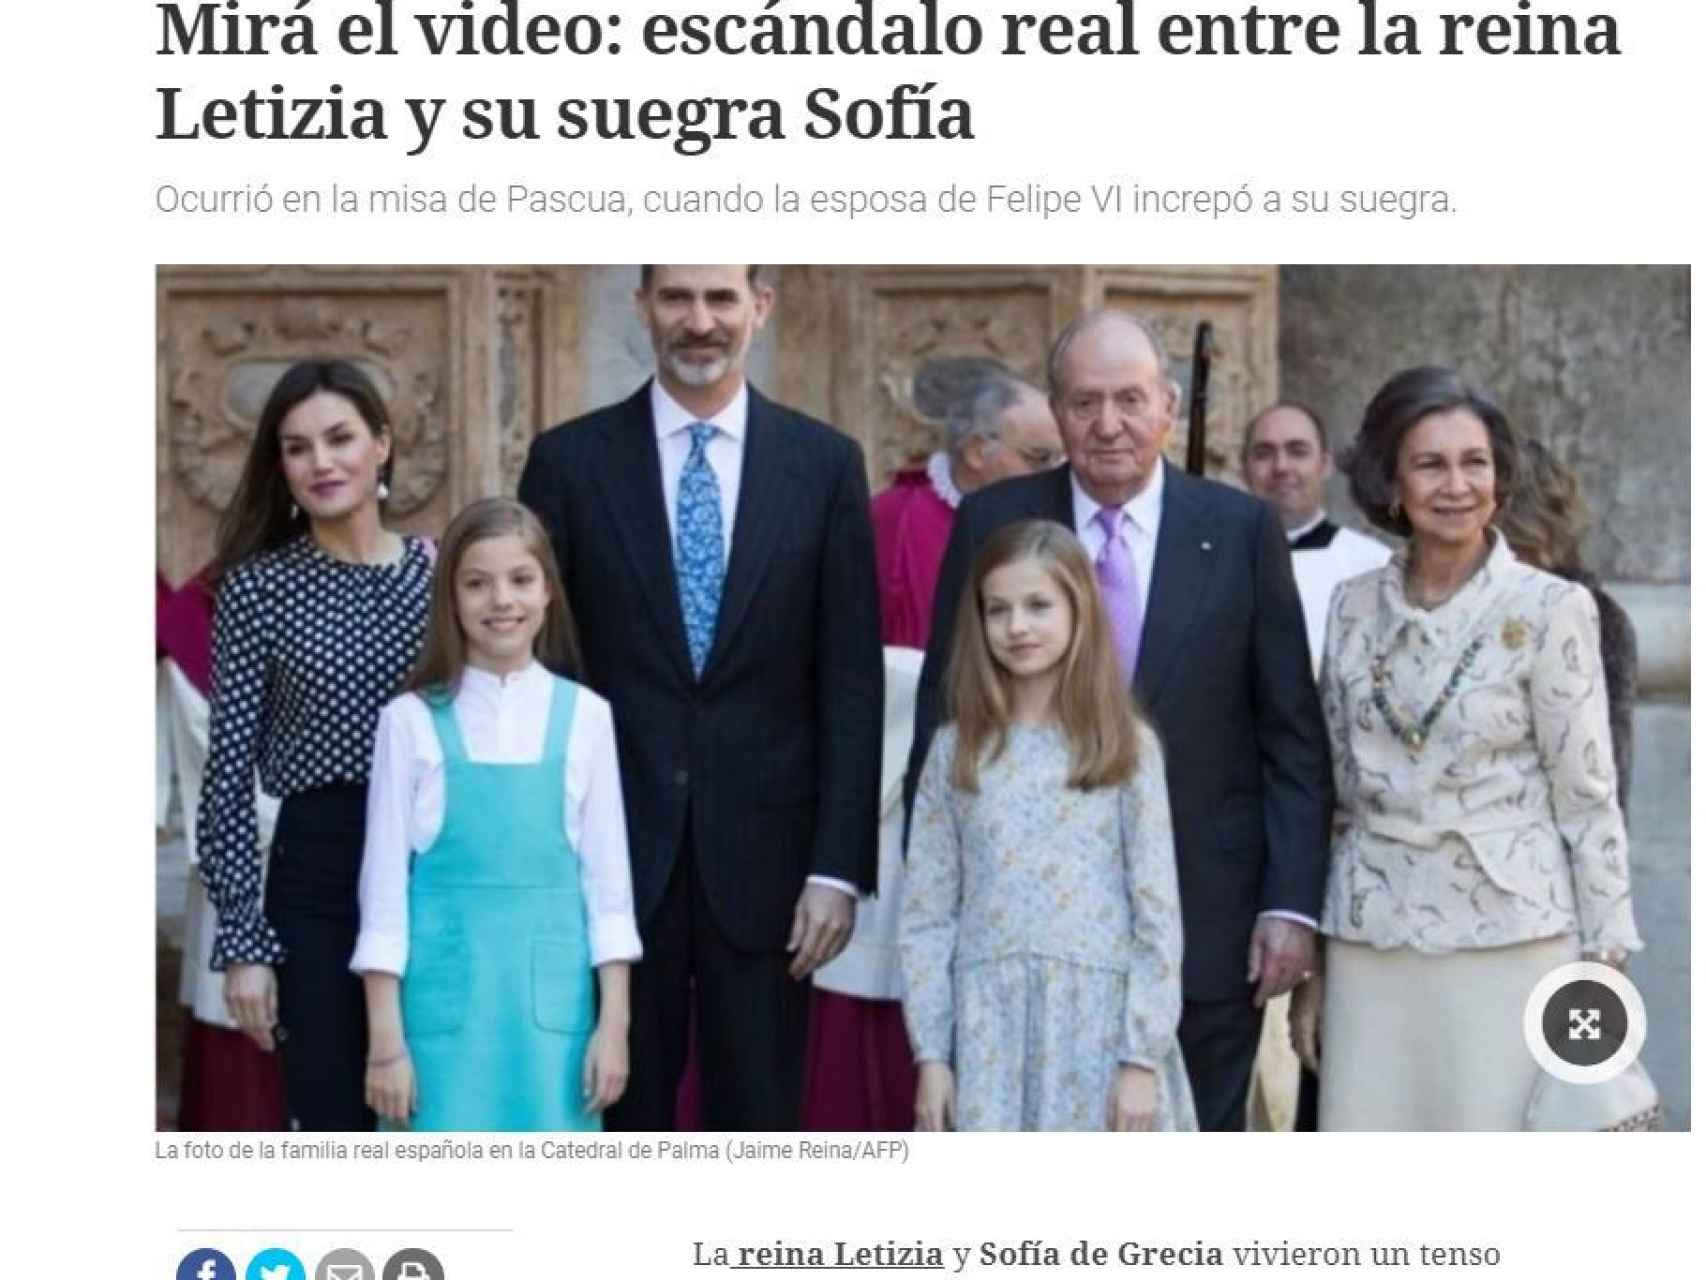 La noticia en el diario Clarín.